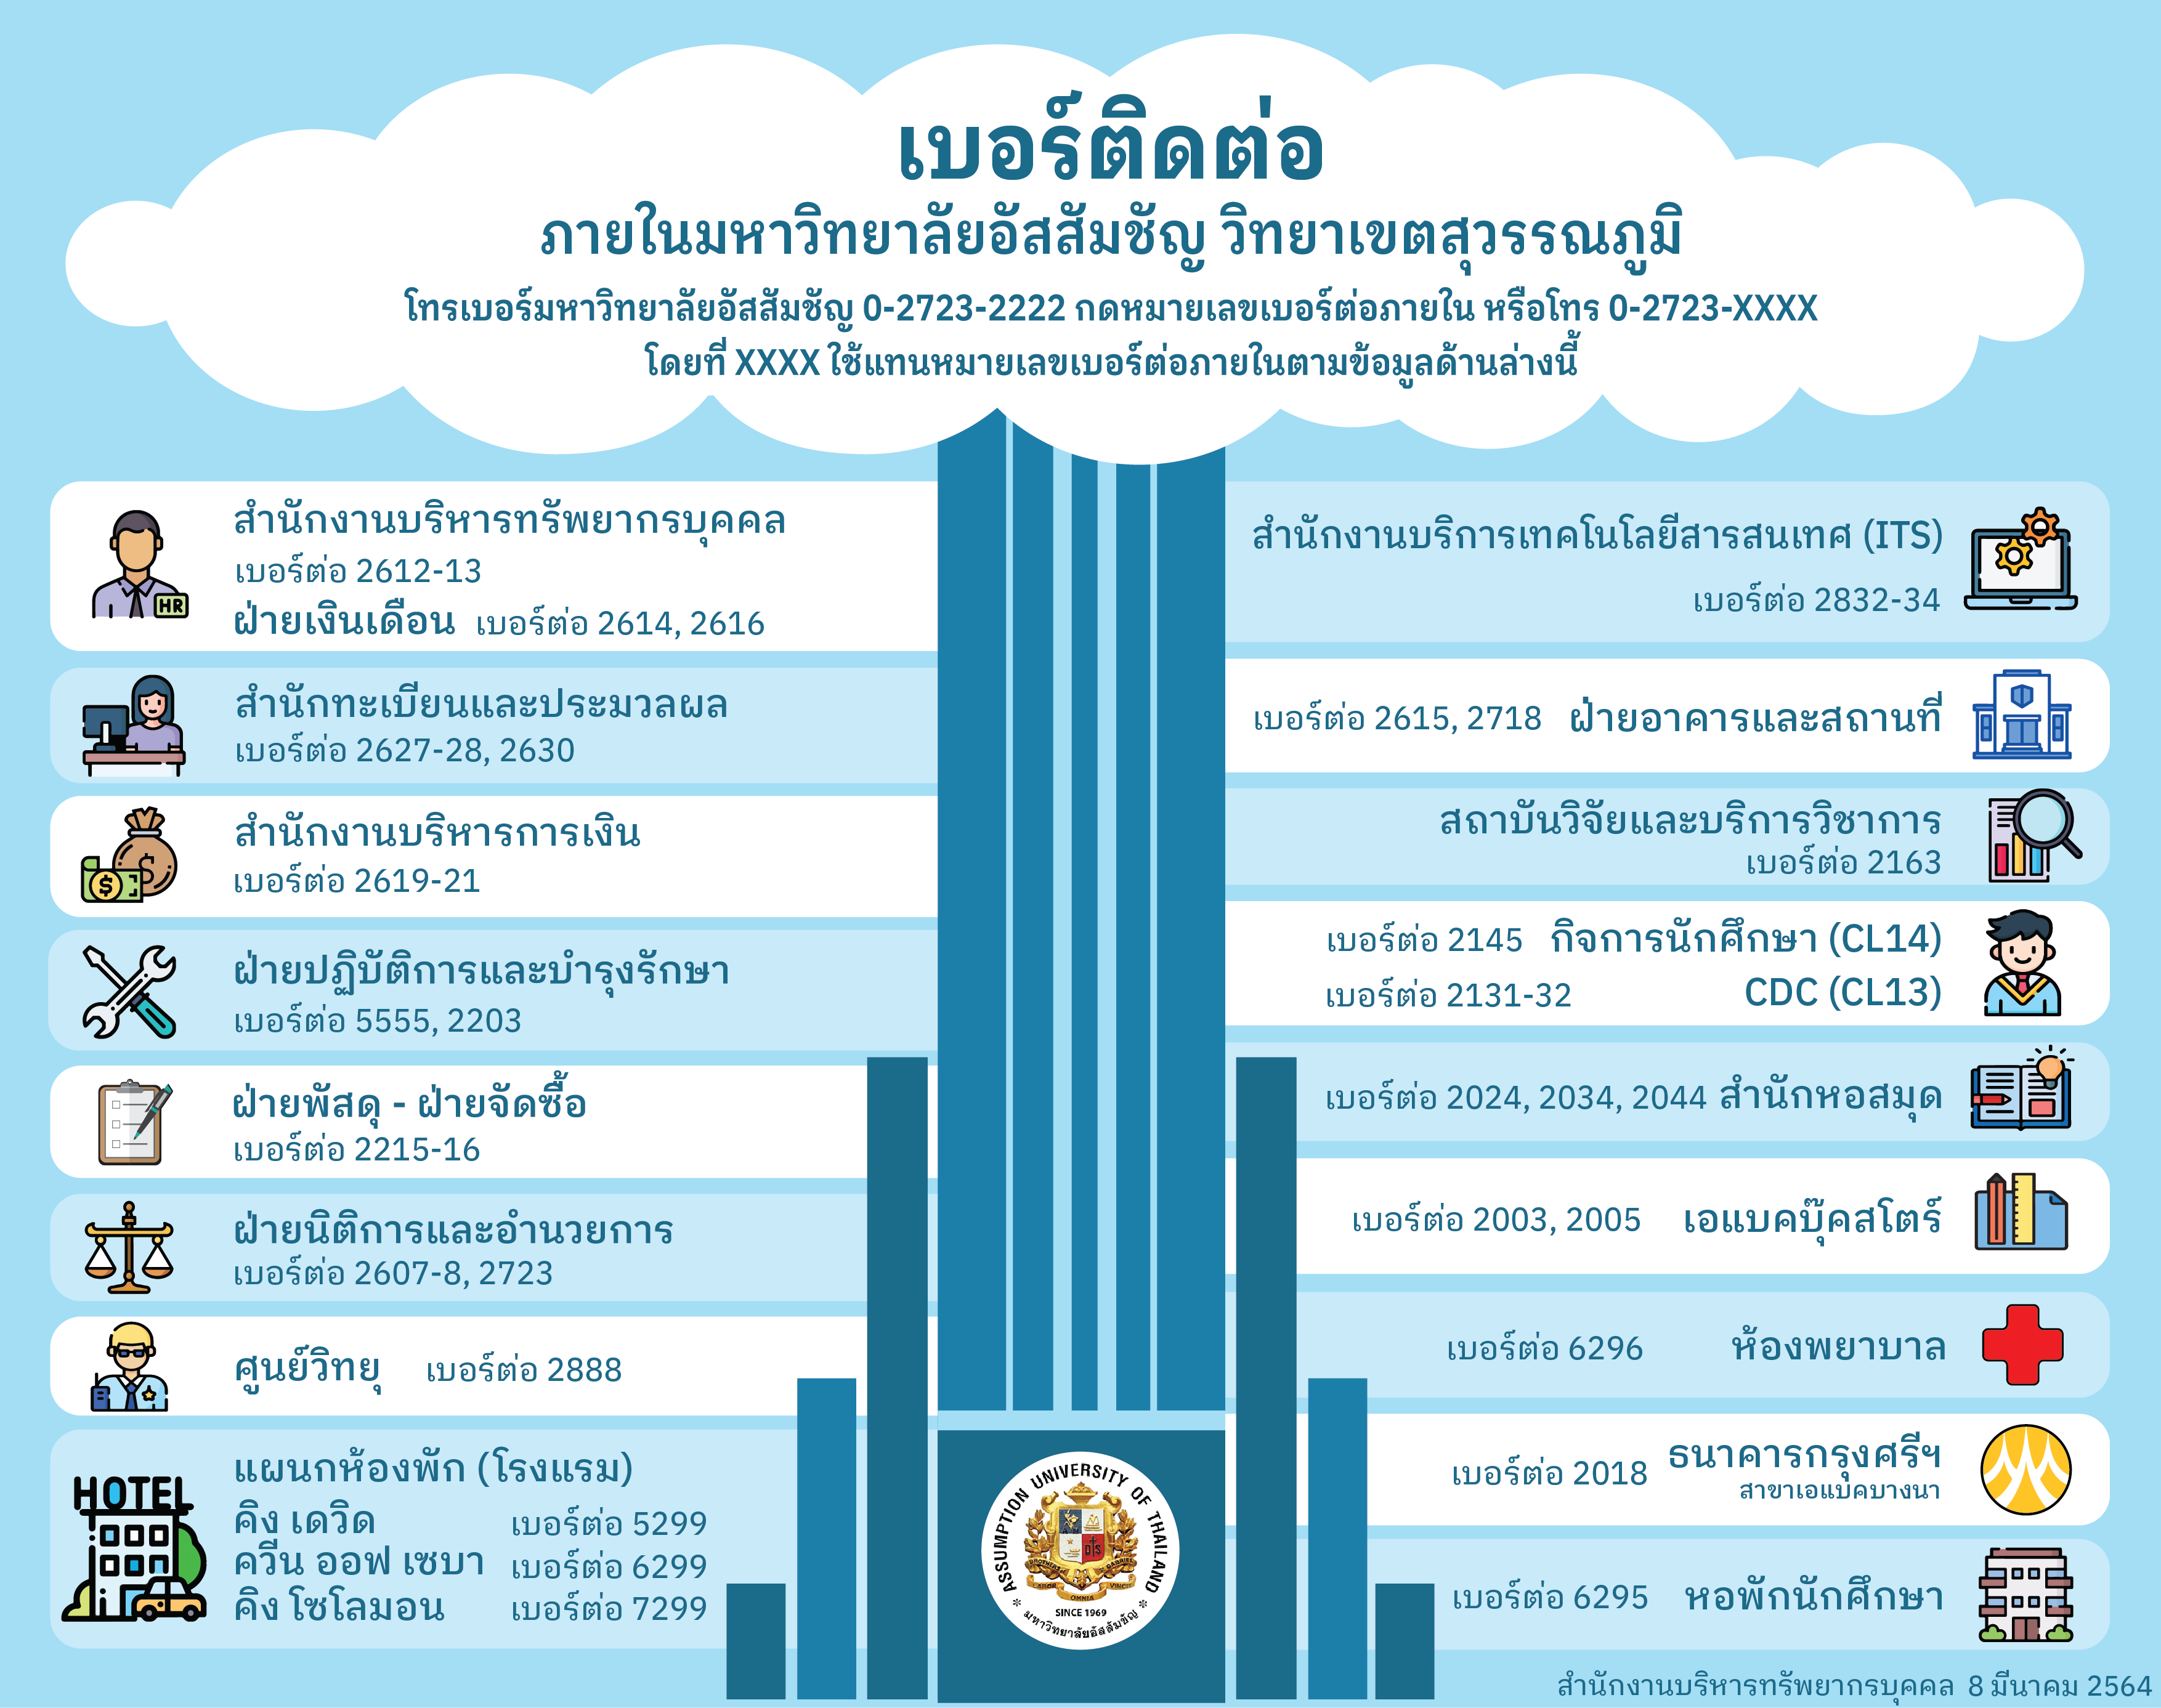 AU Contact Number in Suvarnabhumi Campus (Thai Version)